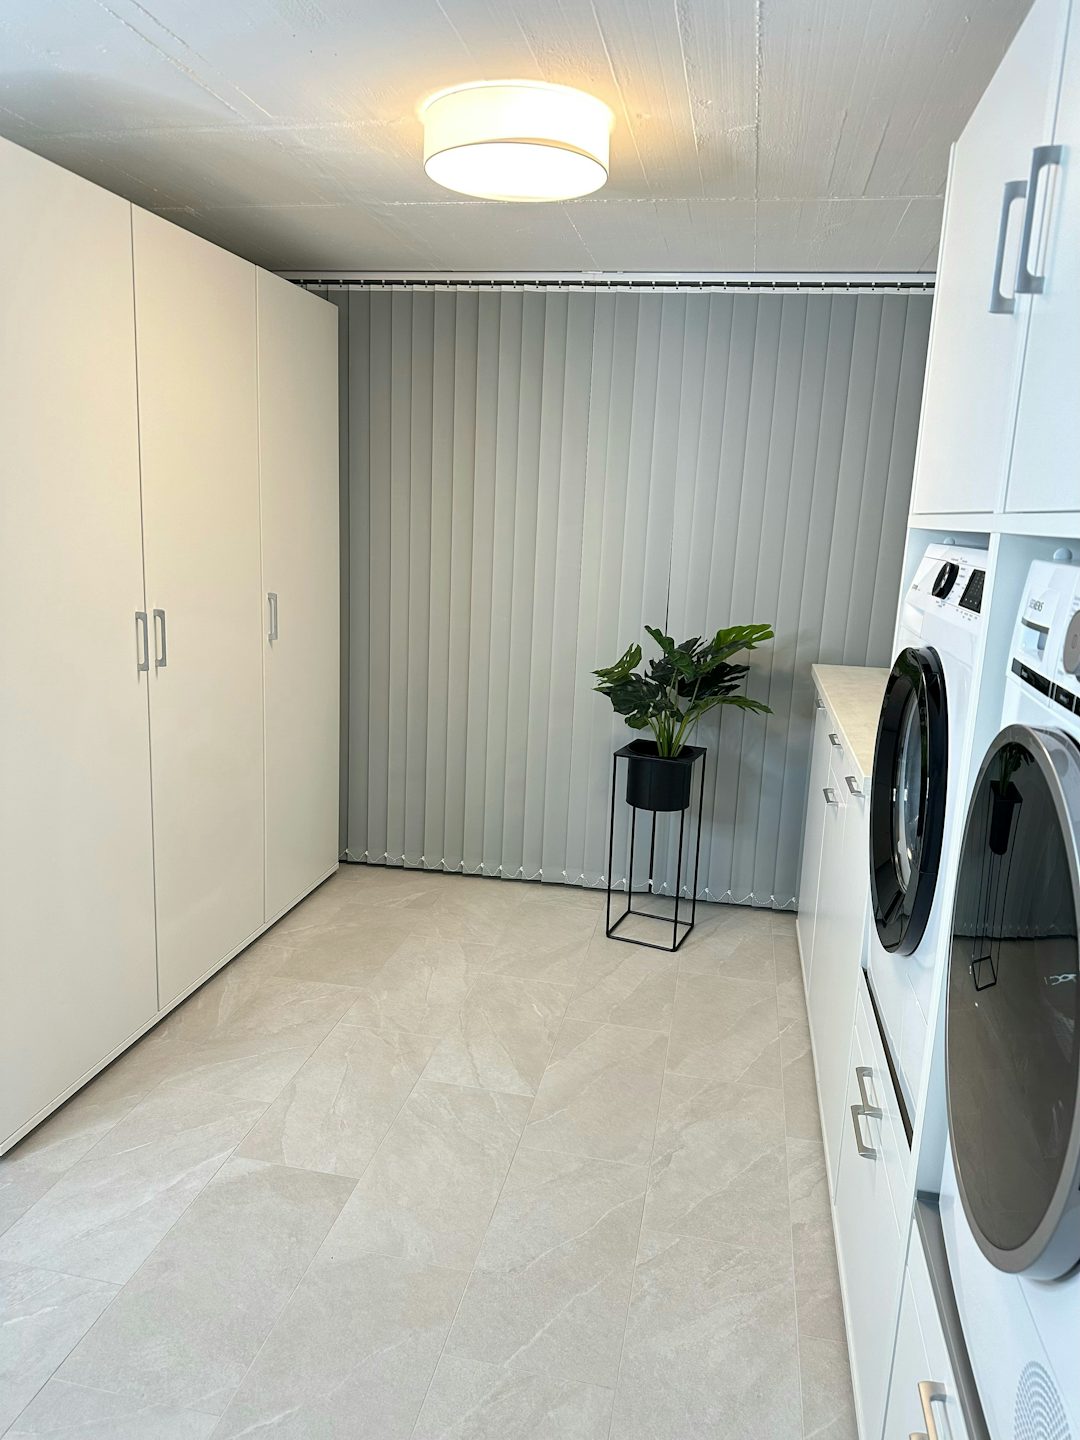 Waschmaschine oder Rohre oder Heizung hinter Vorhang verschwinden lassen und weiße Schränke in den Raum integrieren